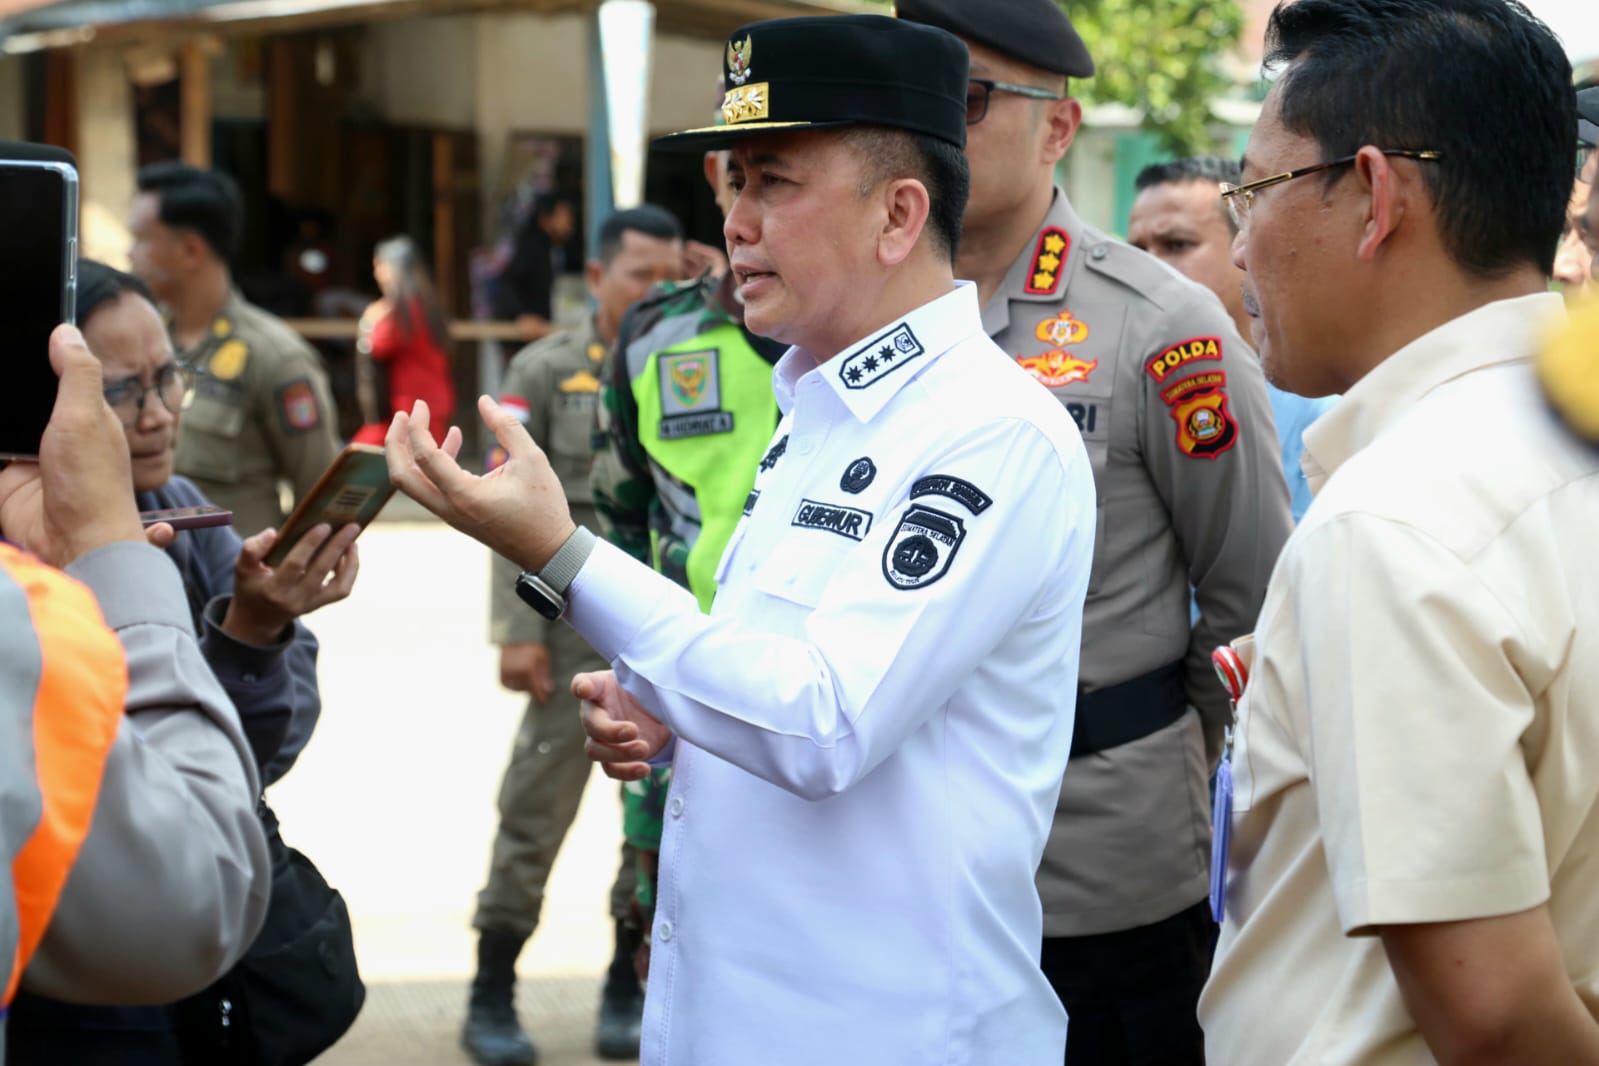 Pj Gubernur Agus Fatoni Usulkan Pelebaran Jalan Palembang-Betung ke Kementerian PUPR, Solusi Atasi Kemacetan 